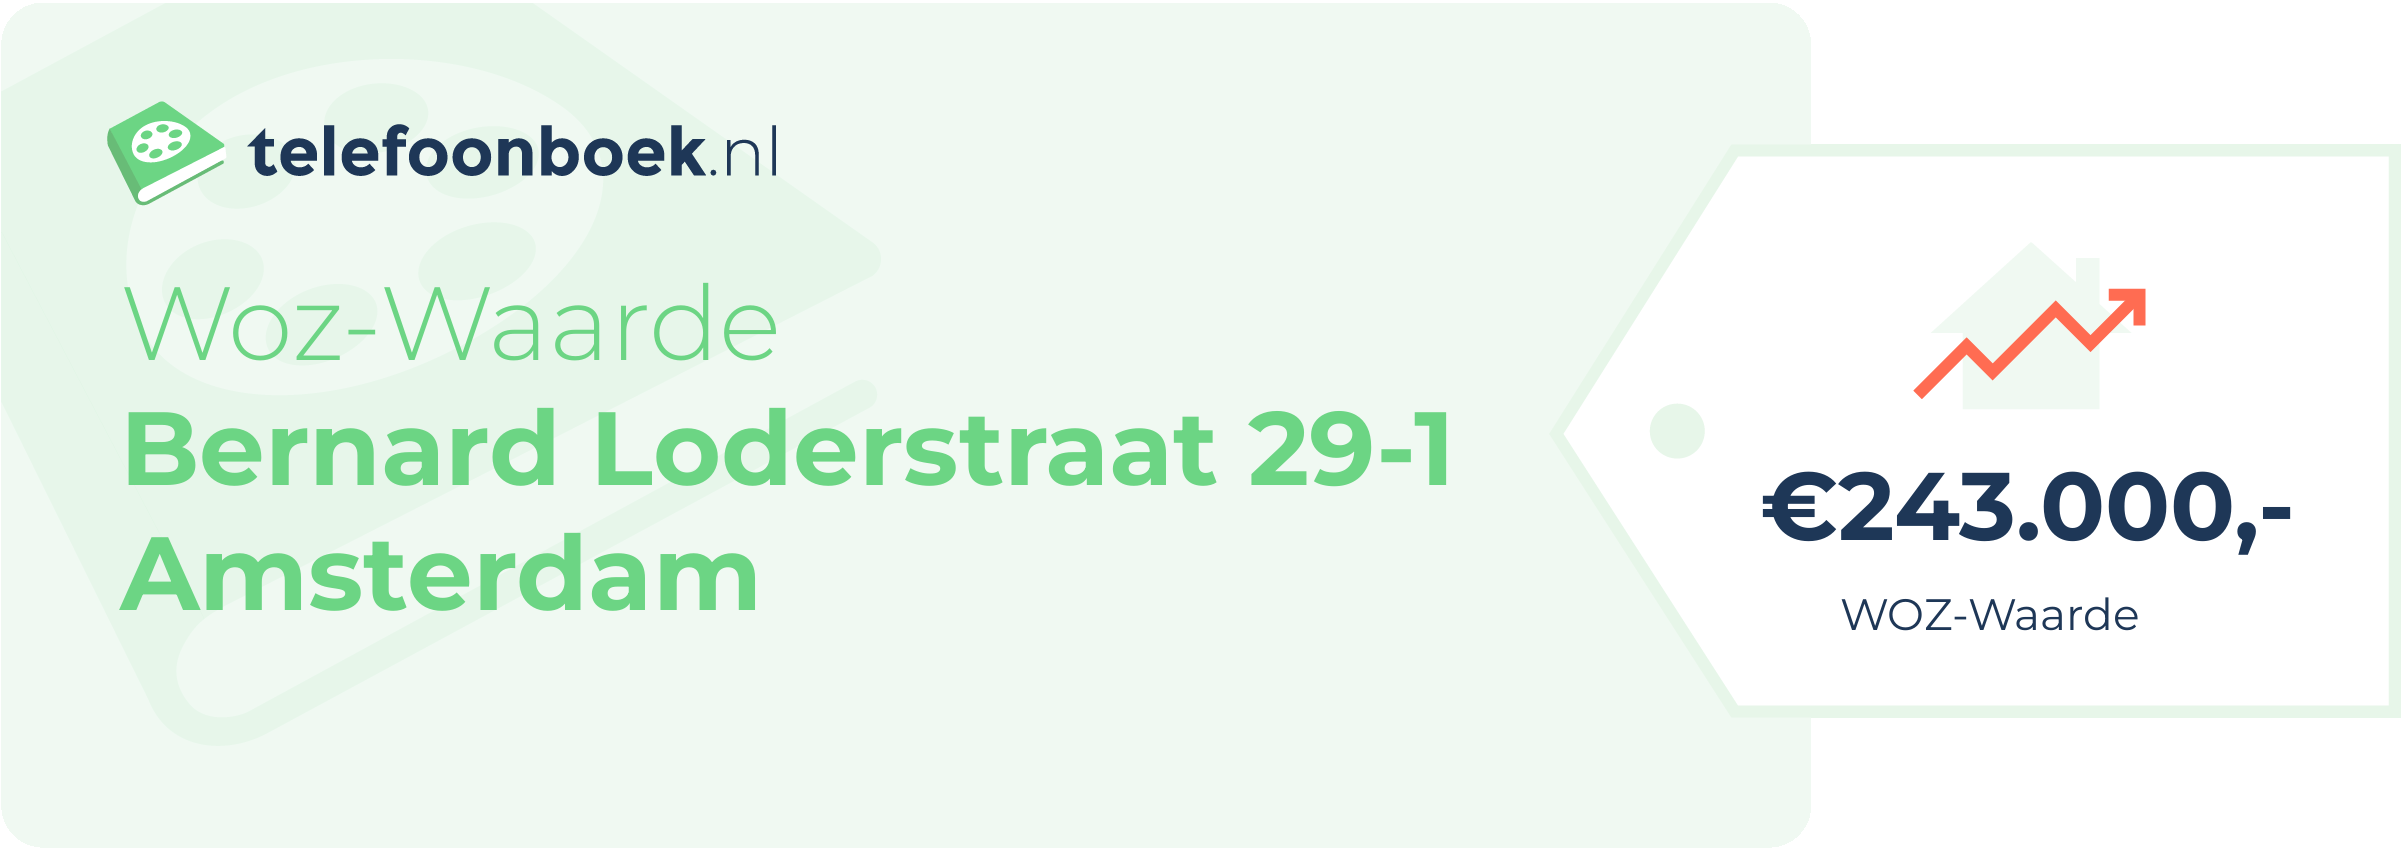 WOZ-waarde Bernard Loderstraat 29-1 Amsterdam